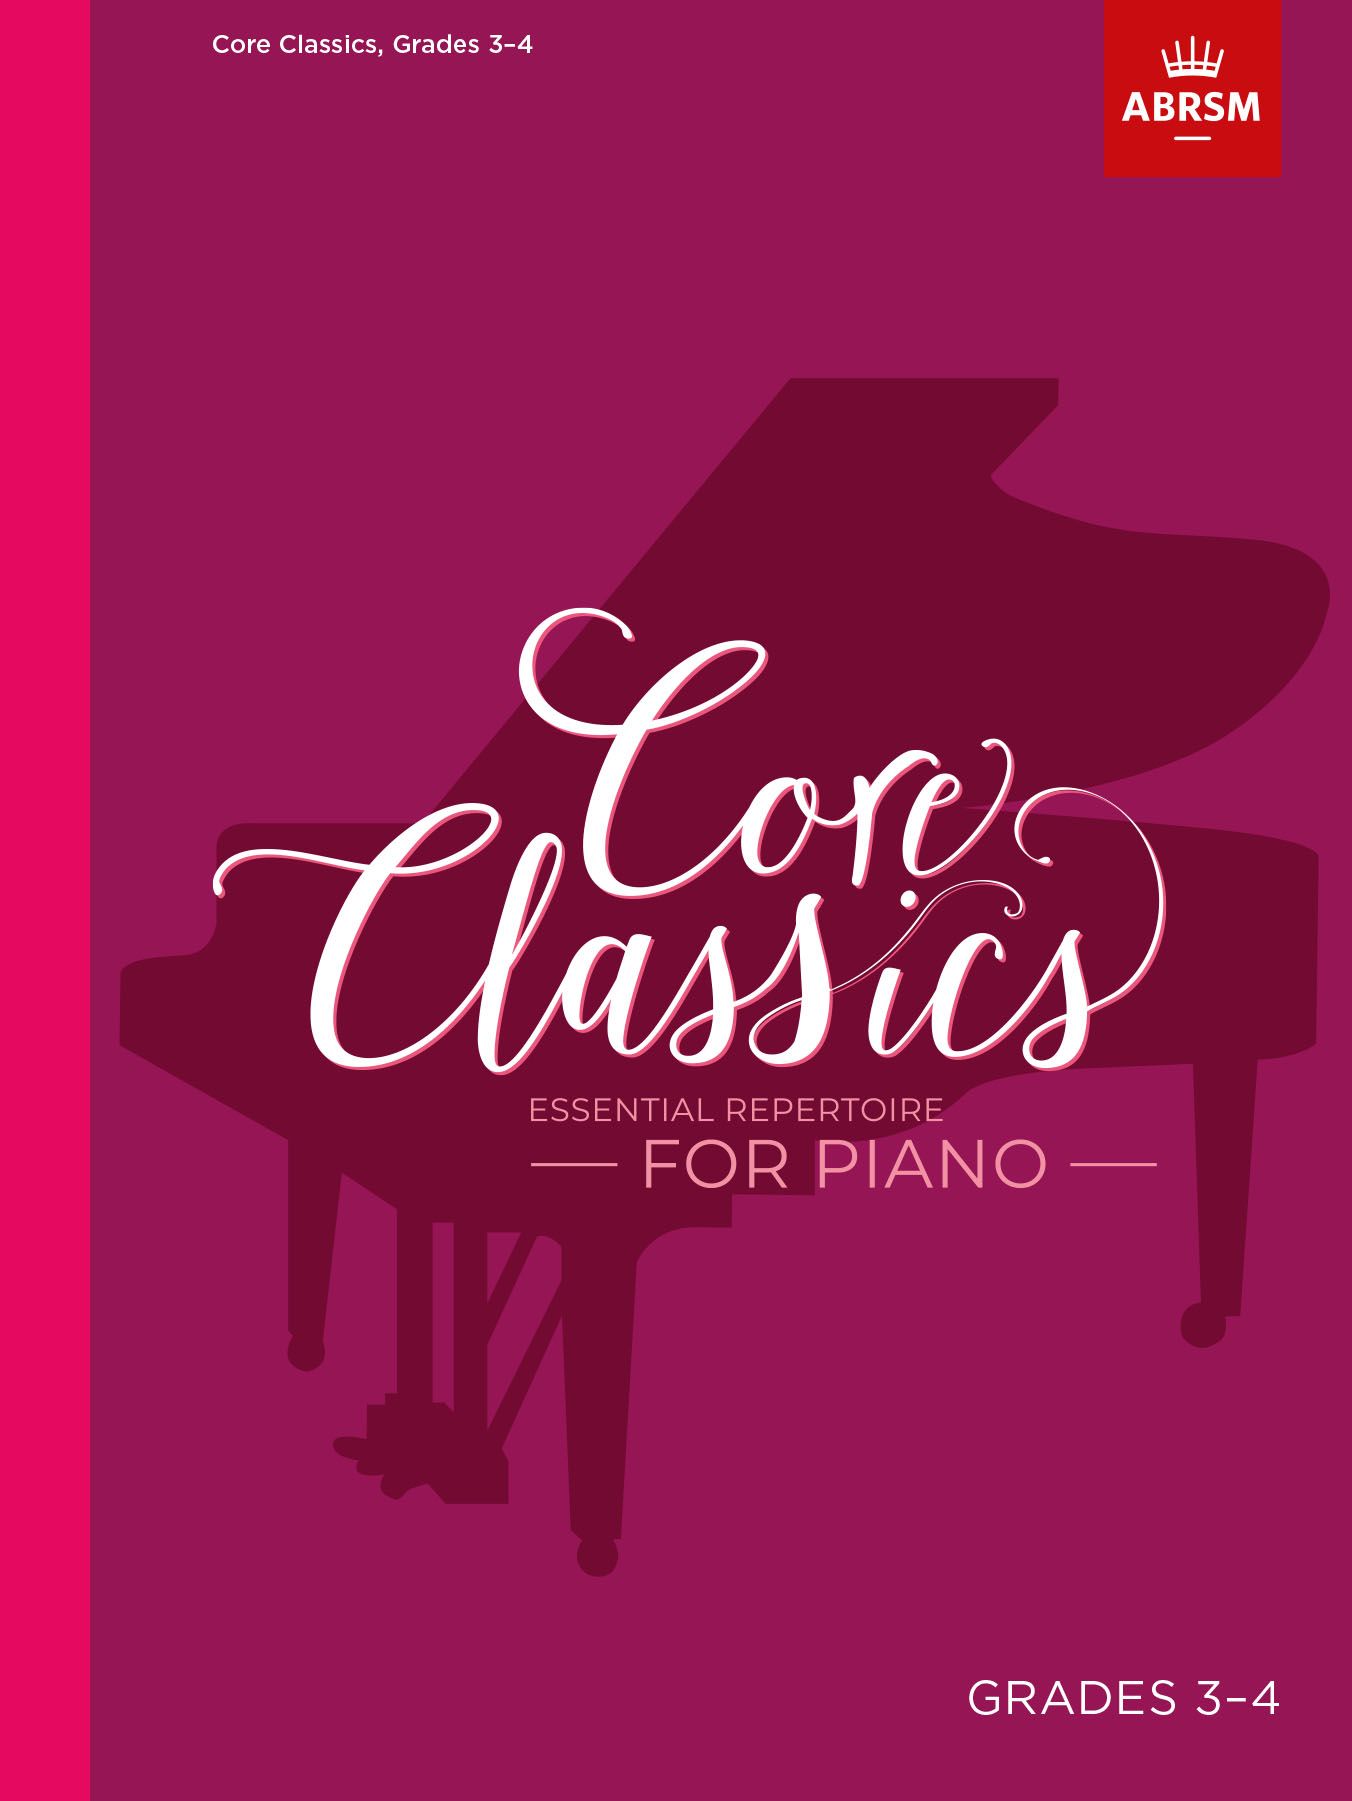 Core Classics - Grades 3-4: Essential Repertoire for Piano